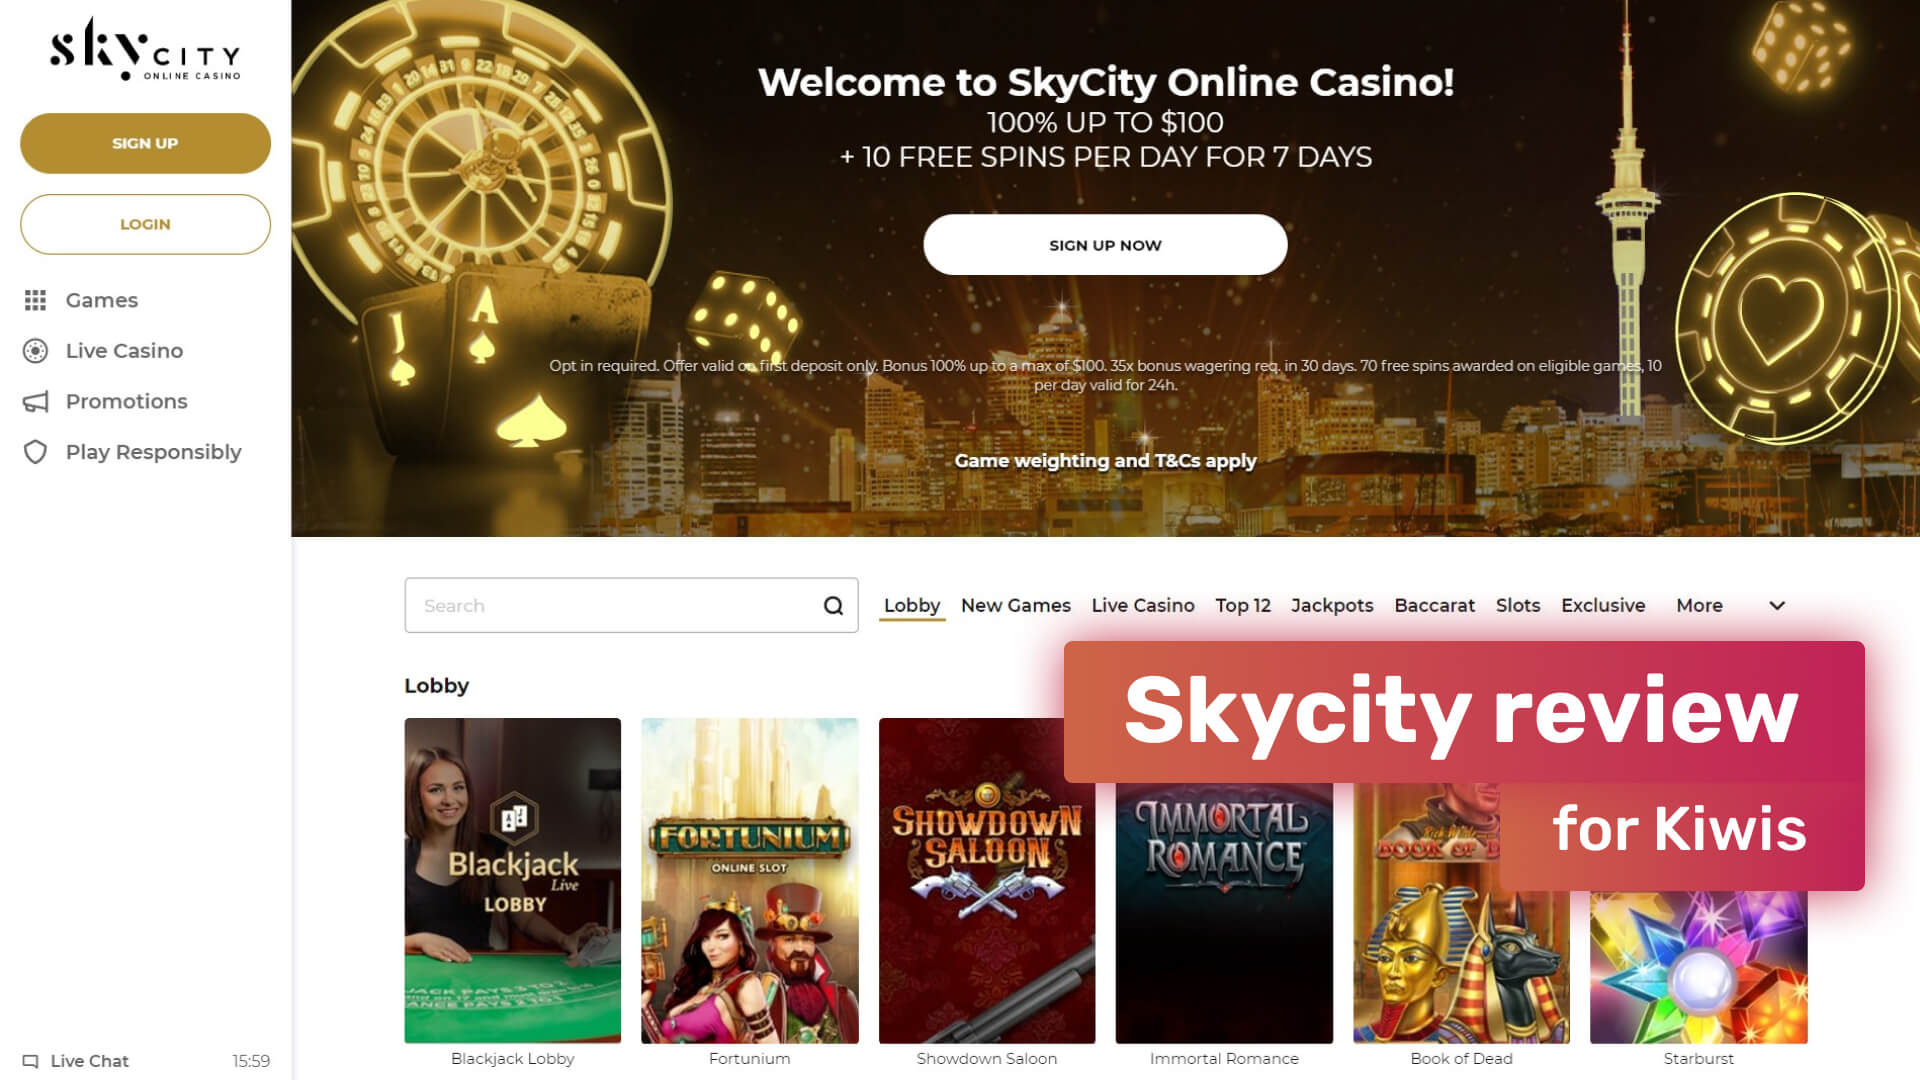 Skycity review for Kiwis!